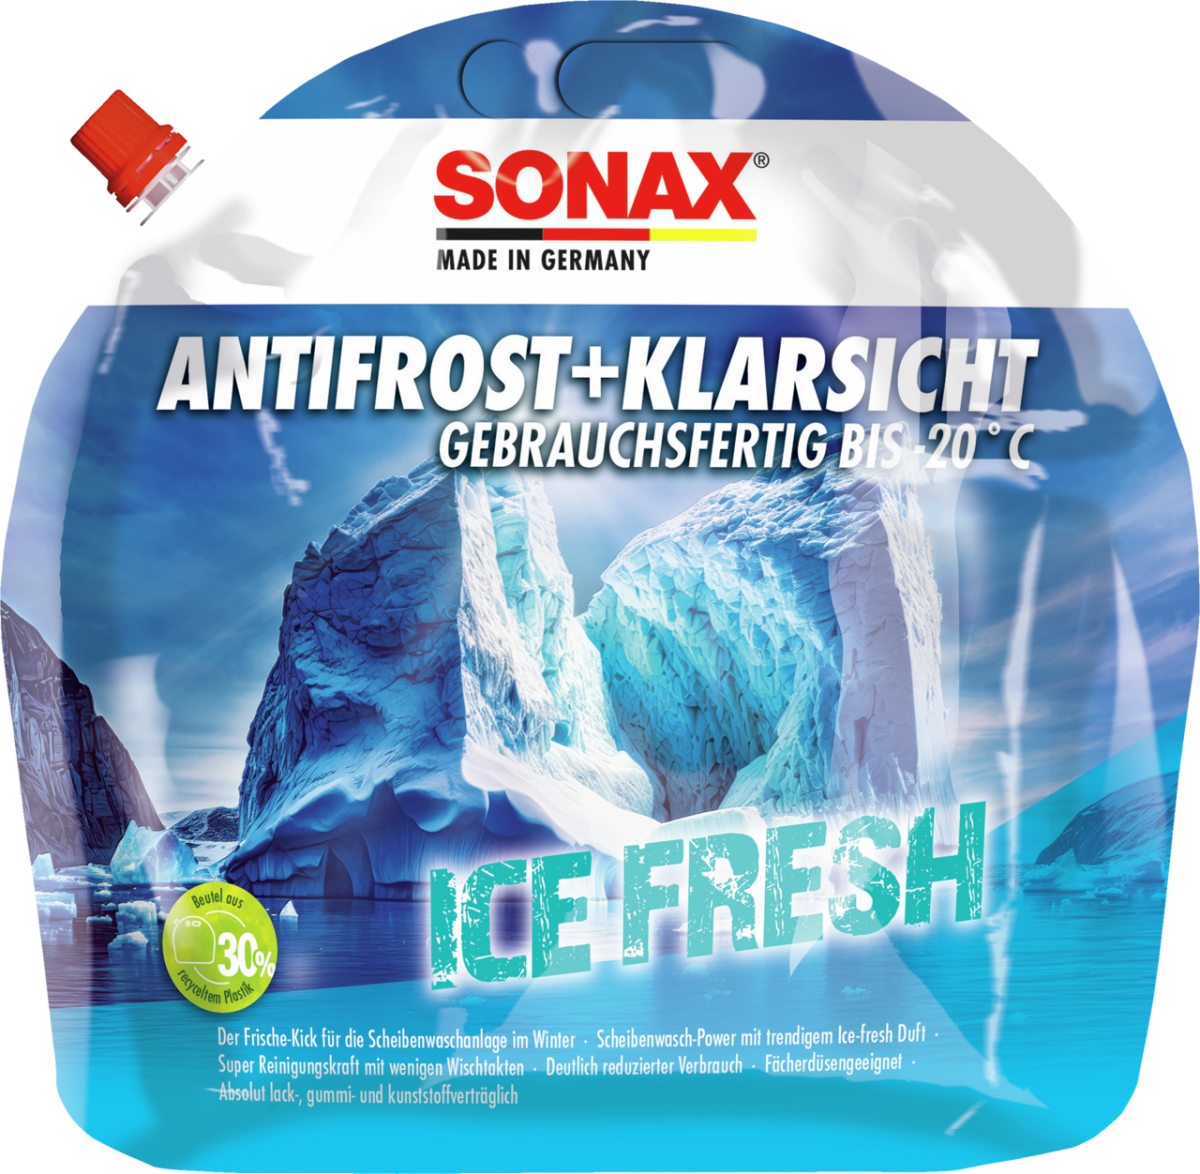 SONAX AntiFrost+Klarsicht bis -20 °C Ice-fresh, 12,06 €